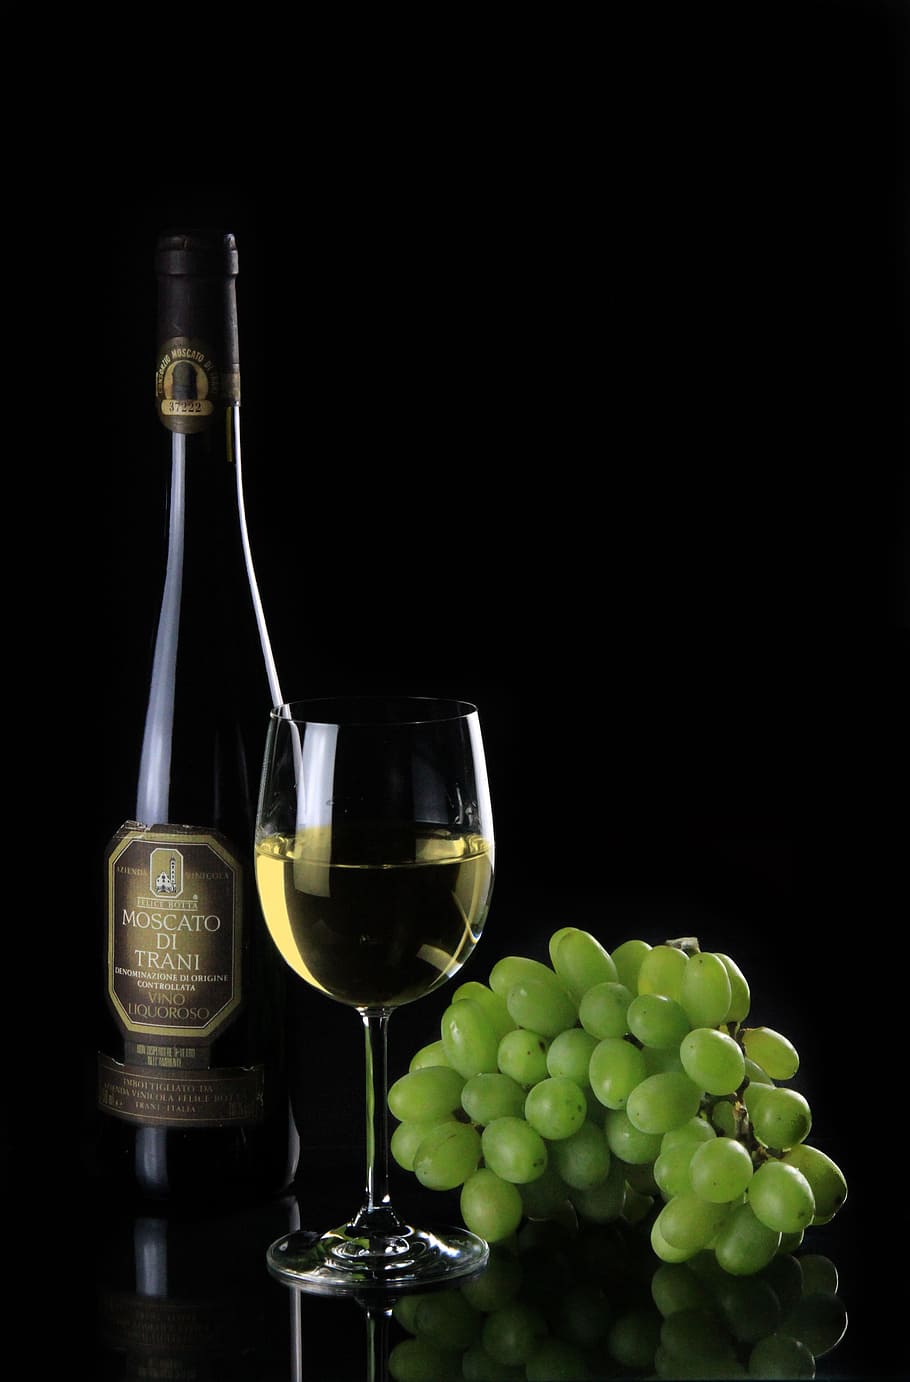 Moscato Di Trani wine bottle , wine glass and green grapes, still life